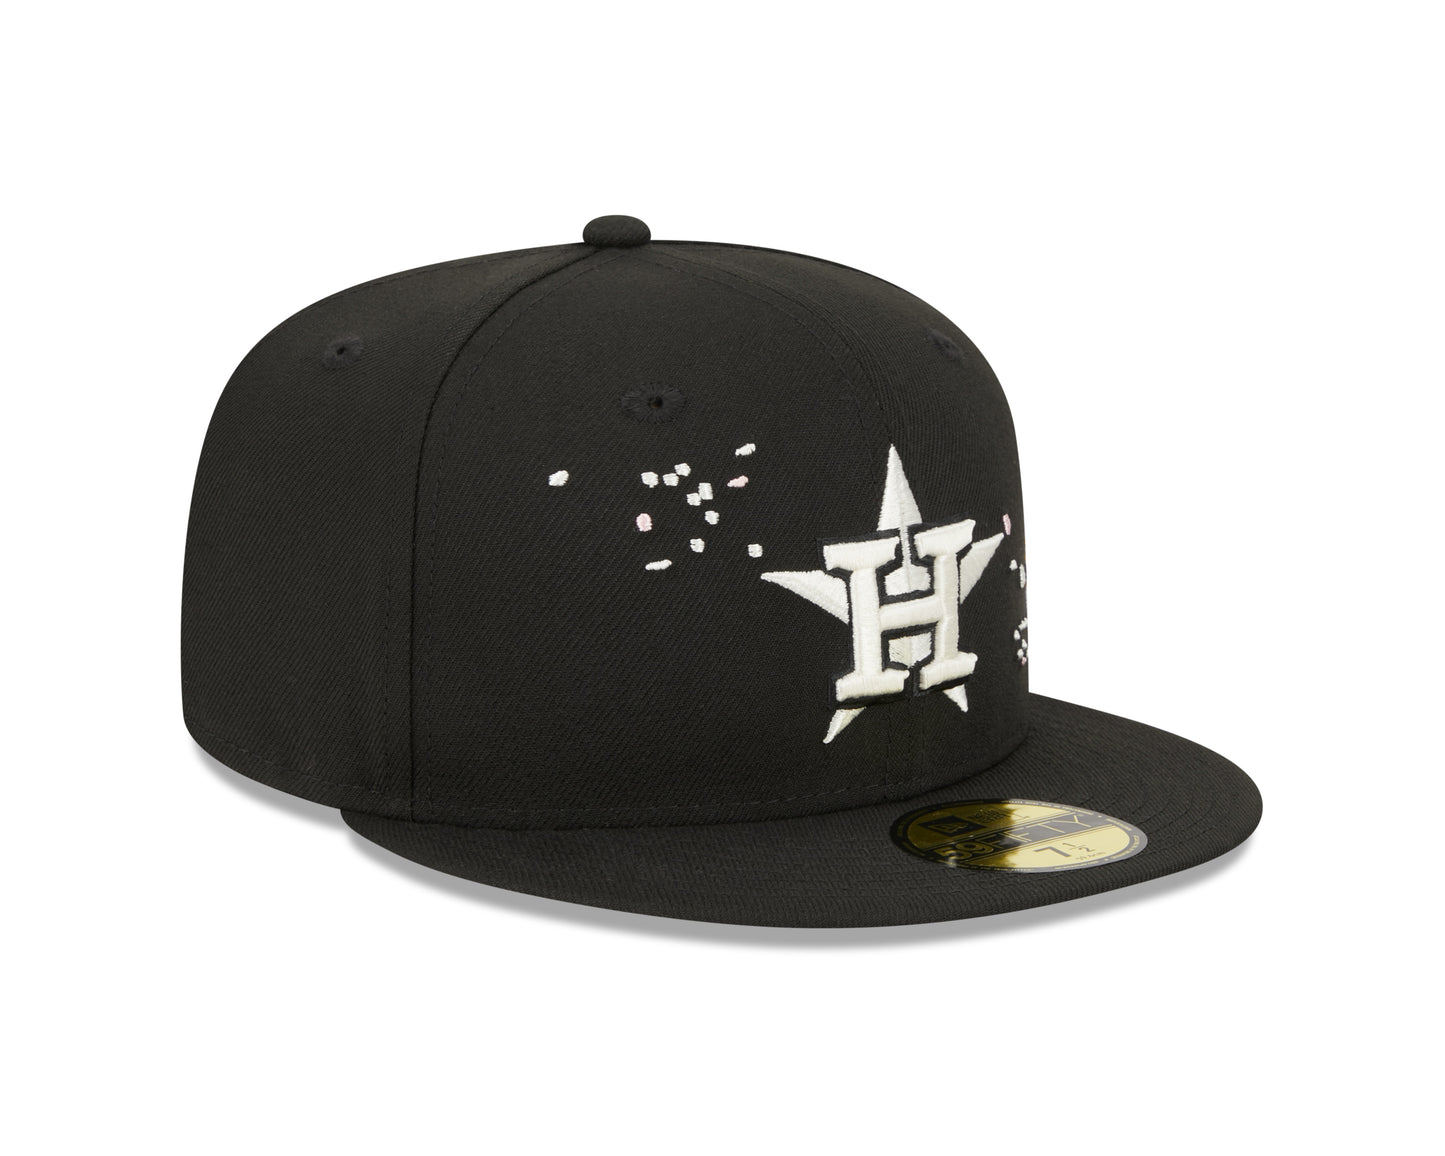 NEW ERA 59FIFTY MLB HOUSTON ASTROS CHERRY BLOSSOM BLACK / GREY UV FITTED CAP